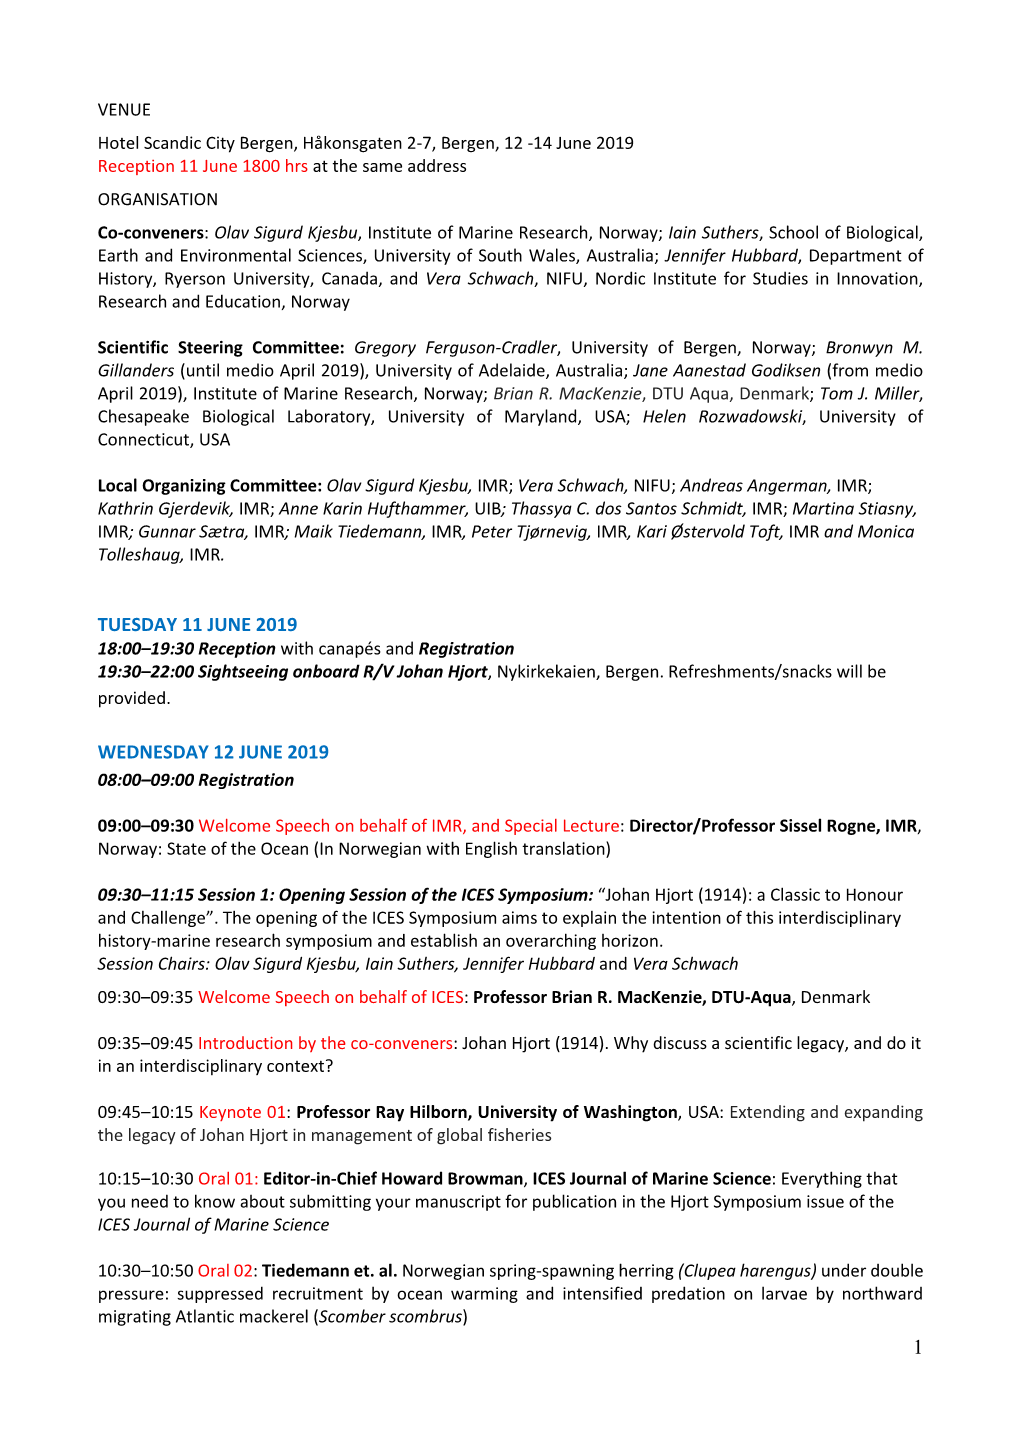 View the Symposium Programme